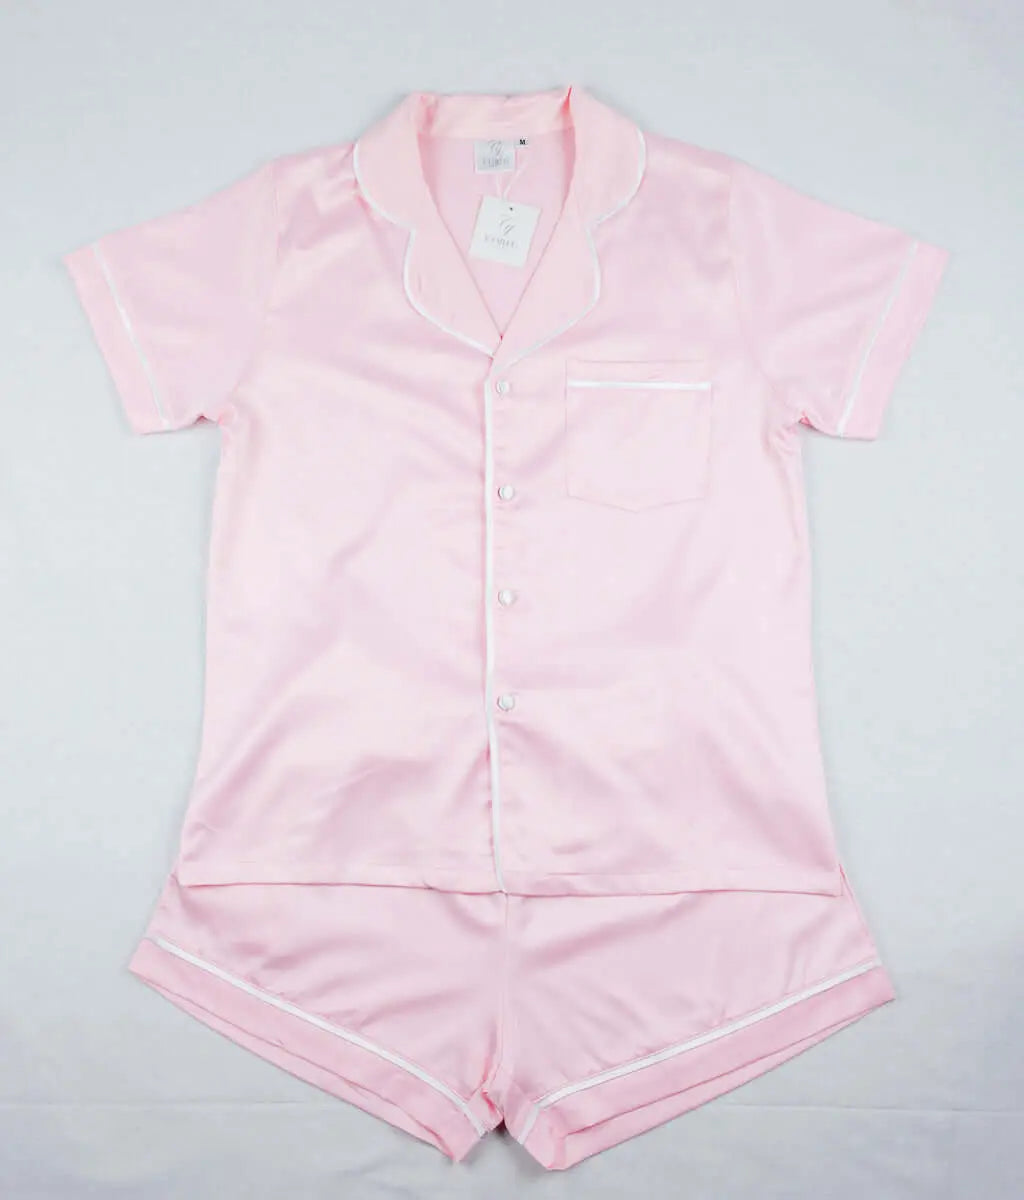 Anastasia | Pink and White 2 Piece Pyjama Short Sleeve | Corfu Jeans